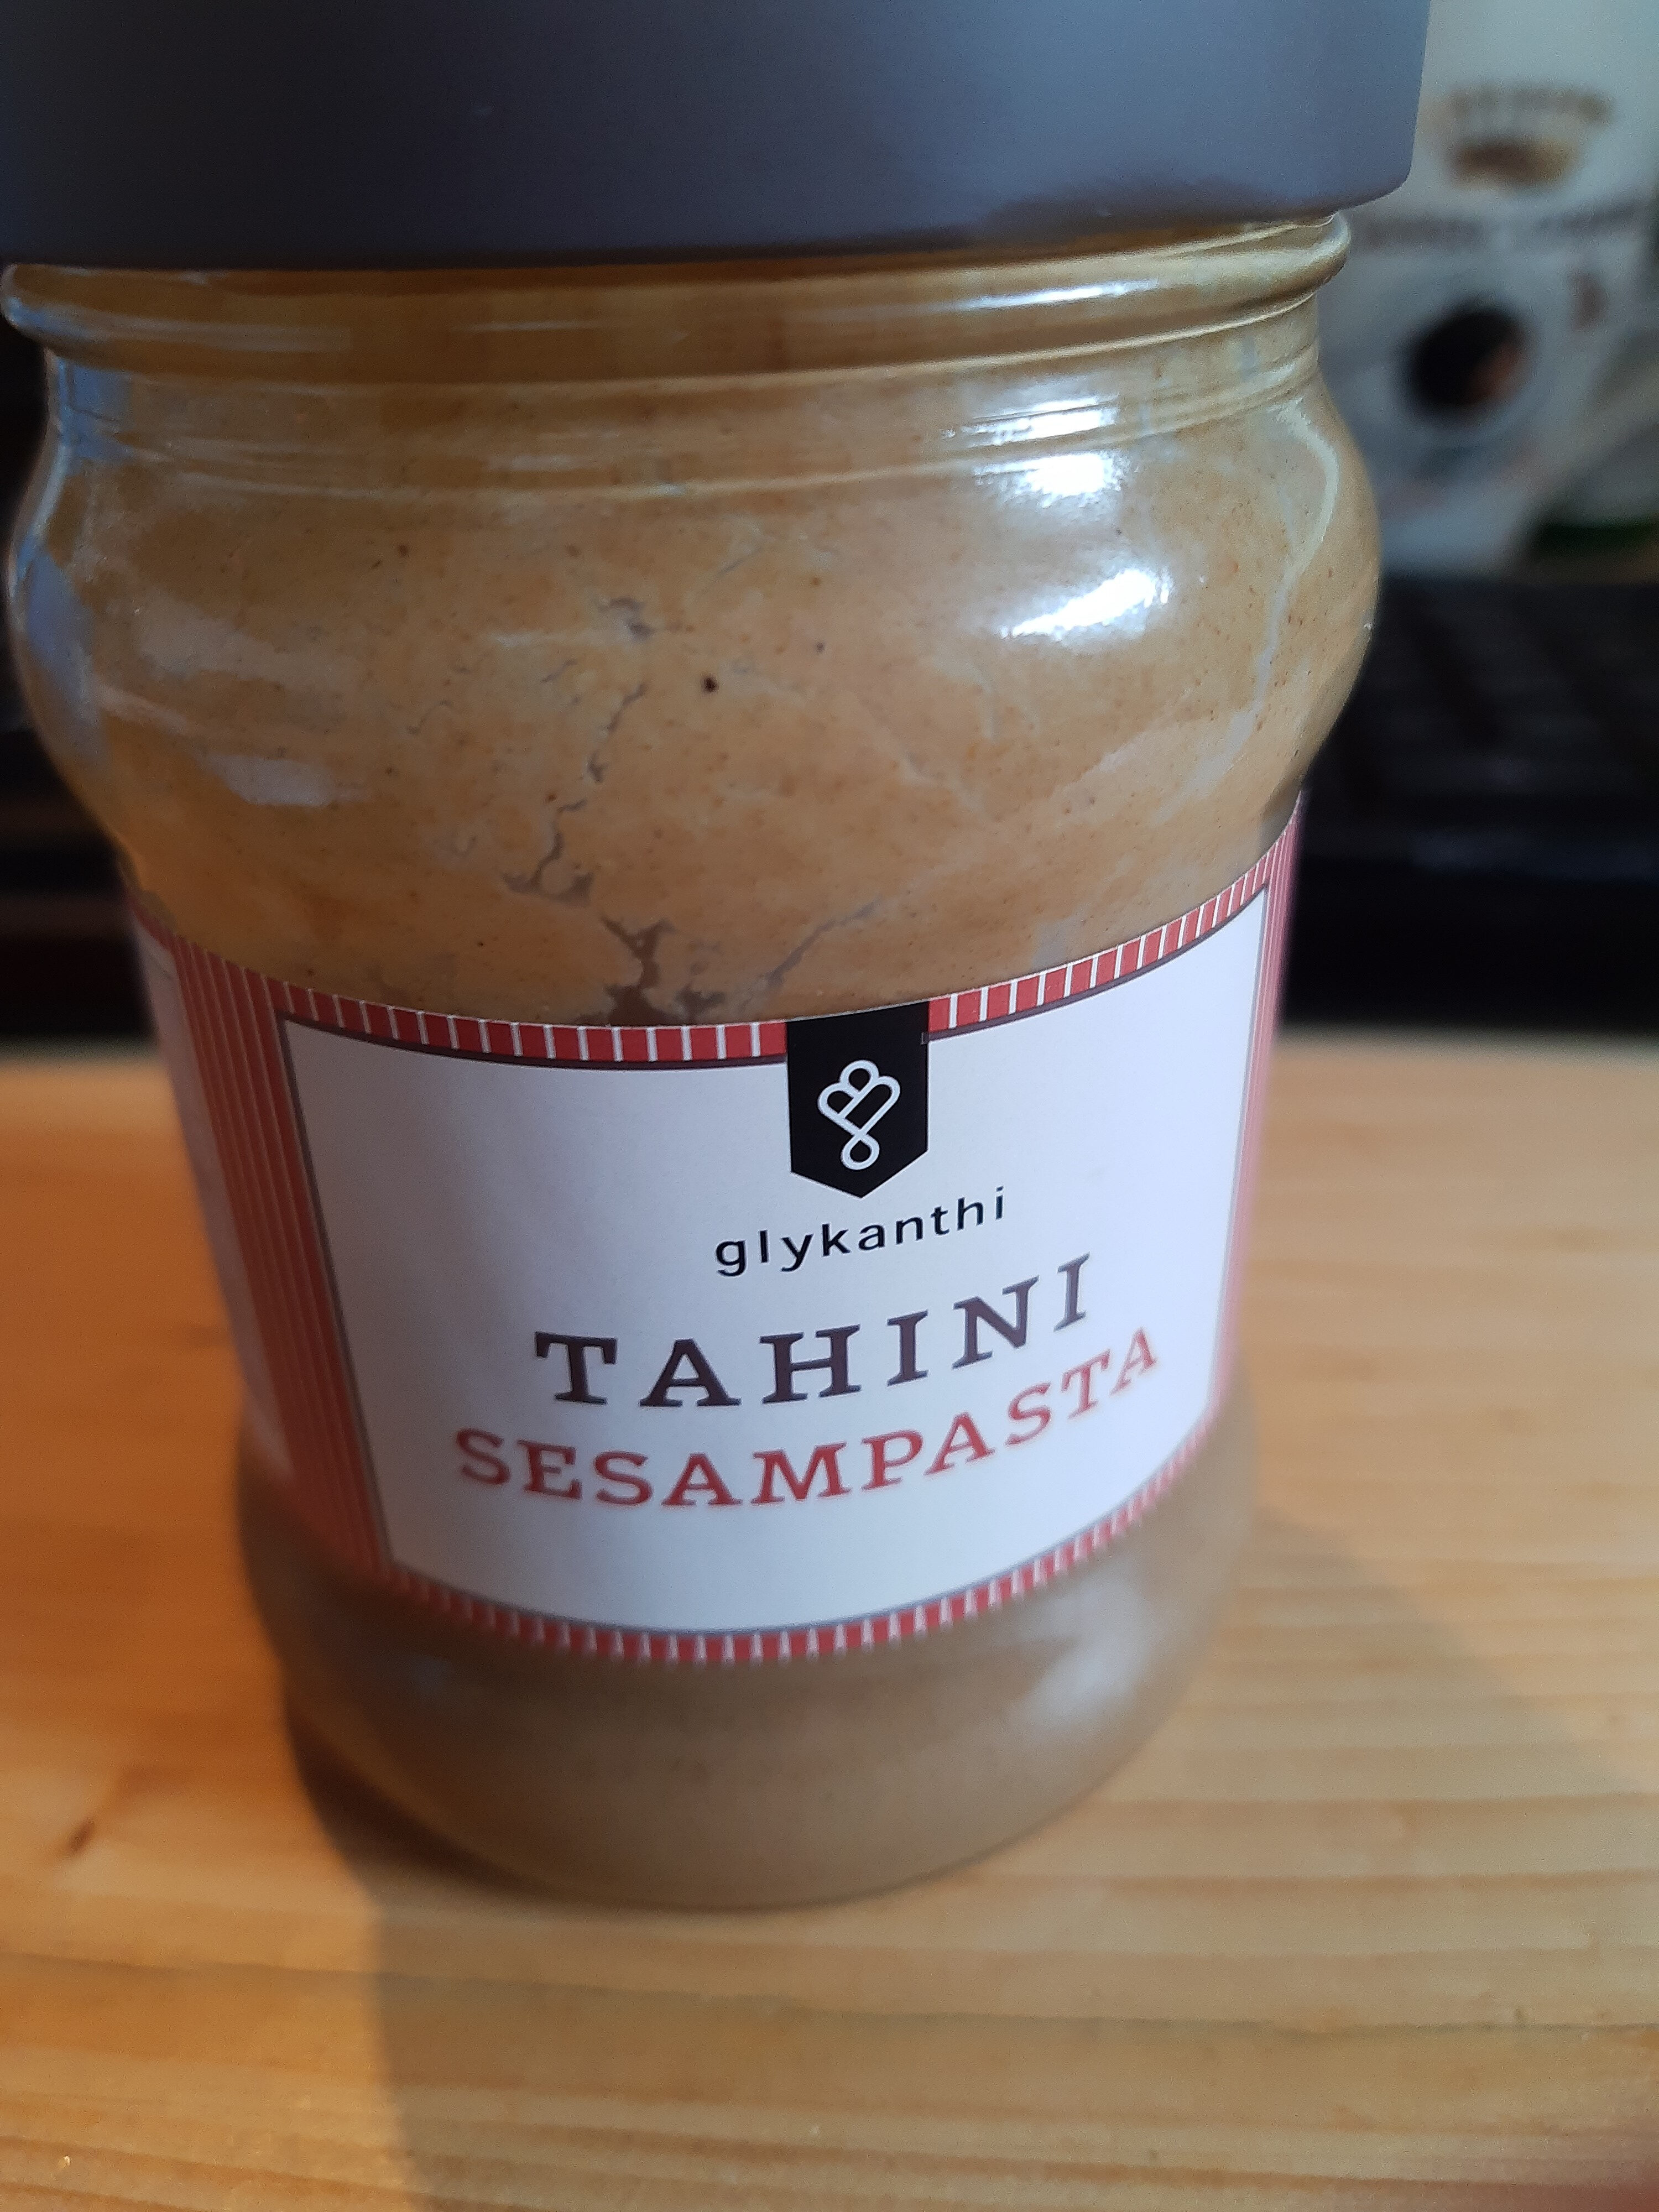 Tahini Sesampasta - Product - en